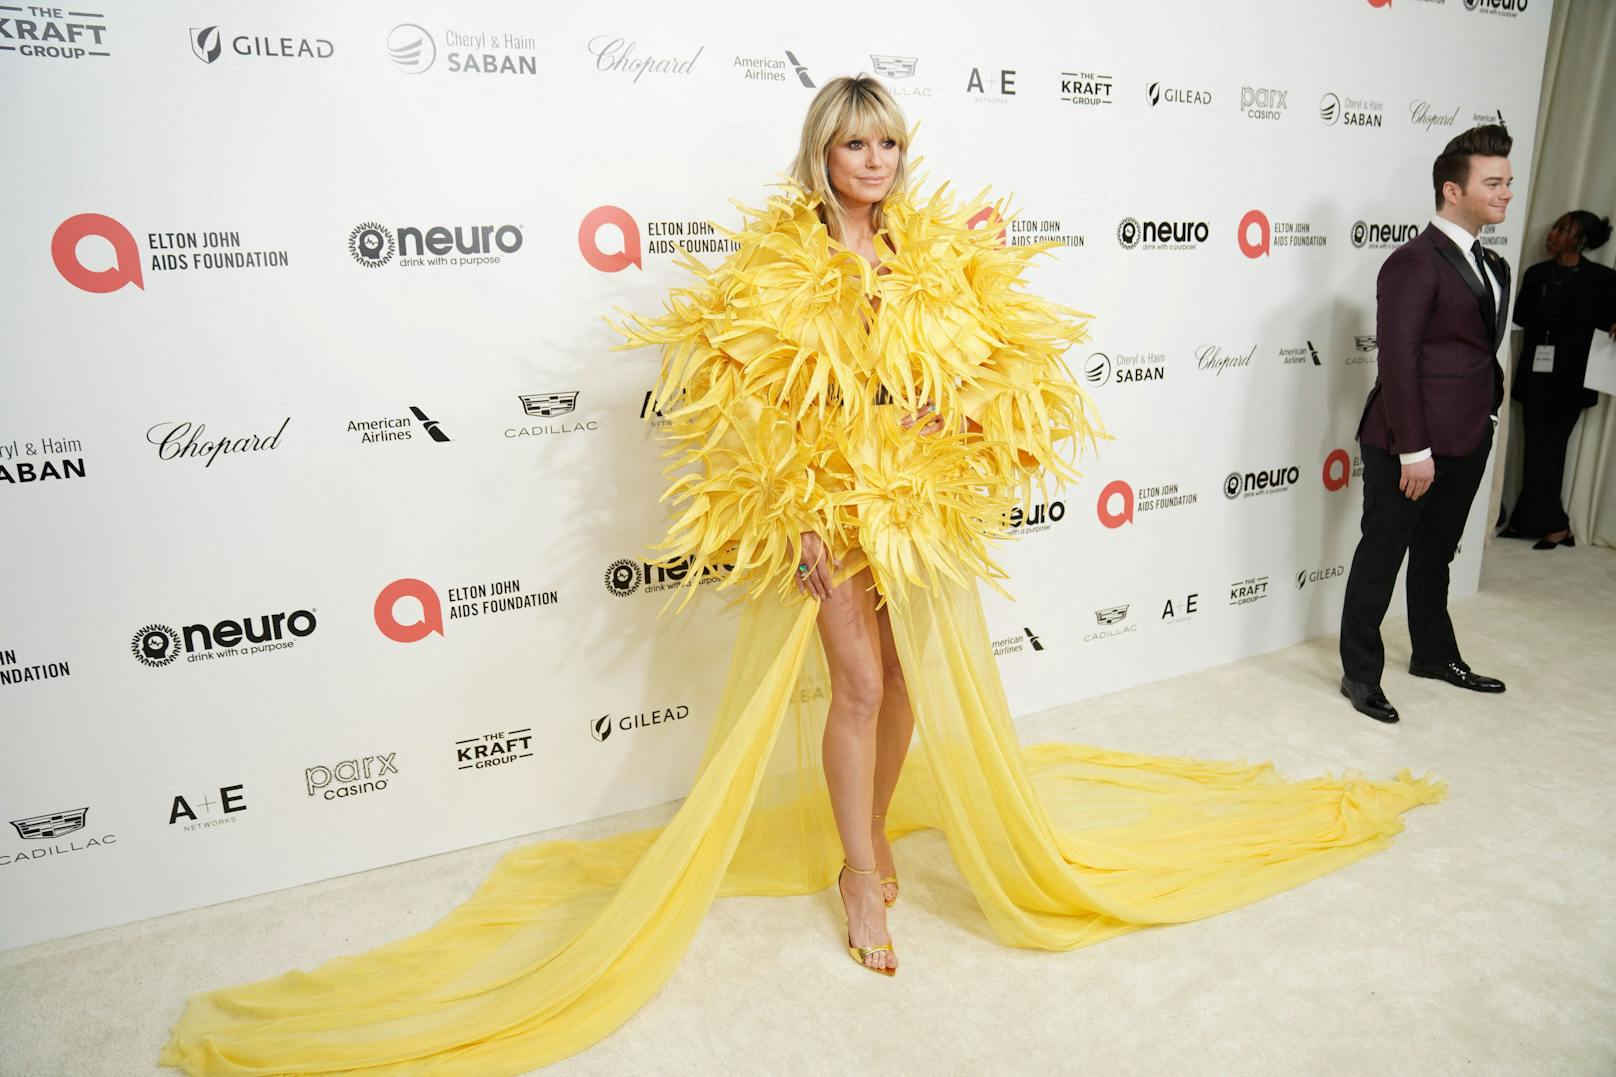 "Sie hat Bibo um die Ecke gebracht", witzelten Fans in den sozialen Netzwerken über Heid Klums Outfit bei Elton Johns Oscar-Party.